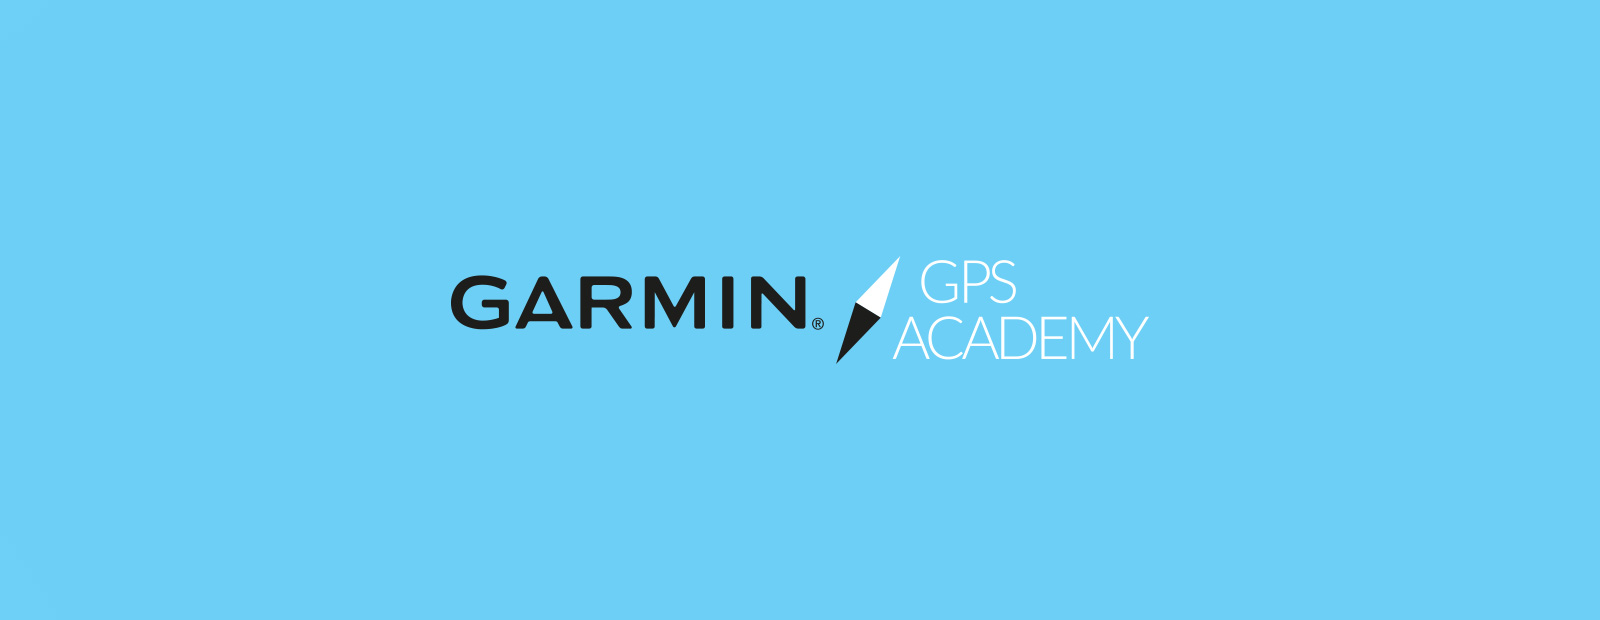 Garmin GPS Academy